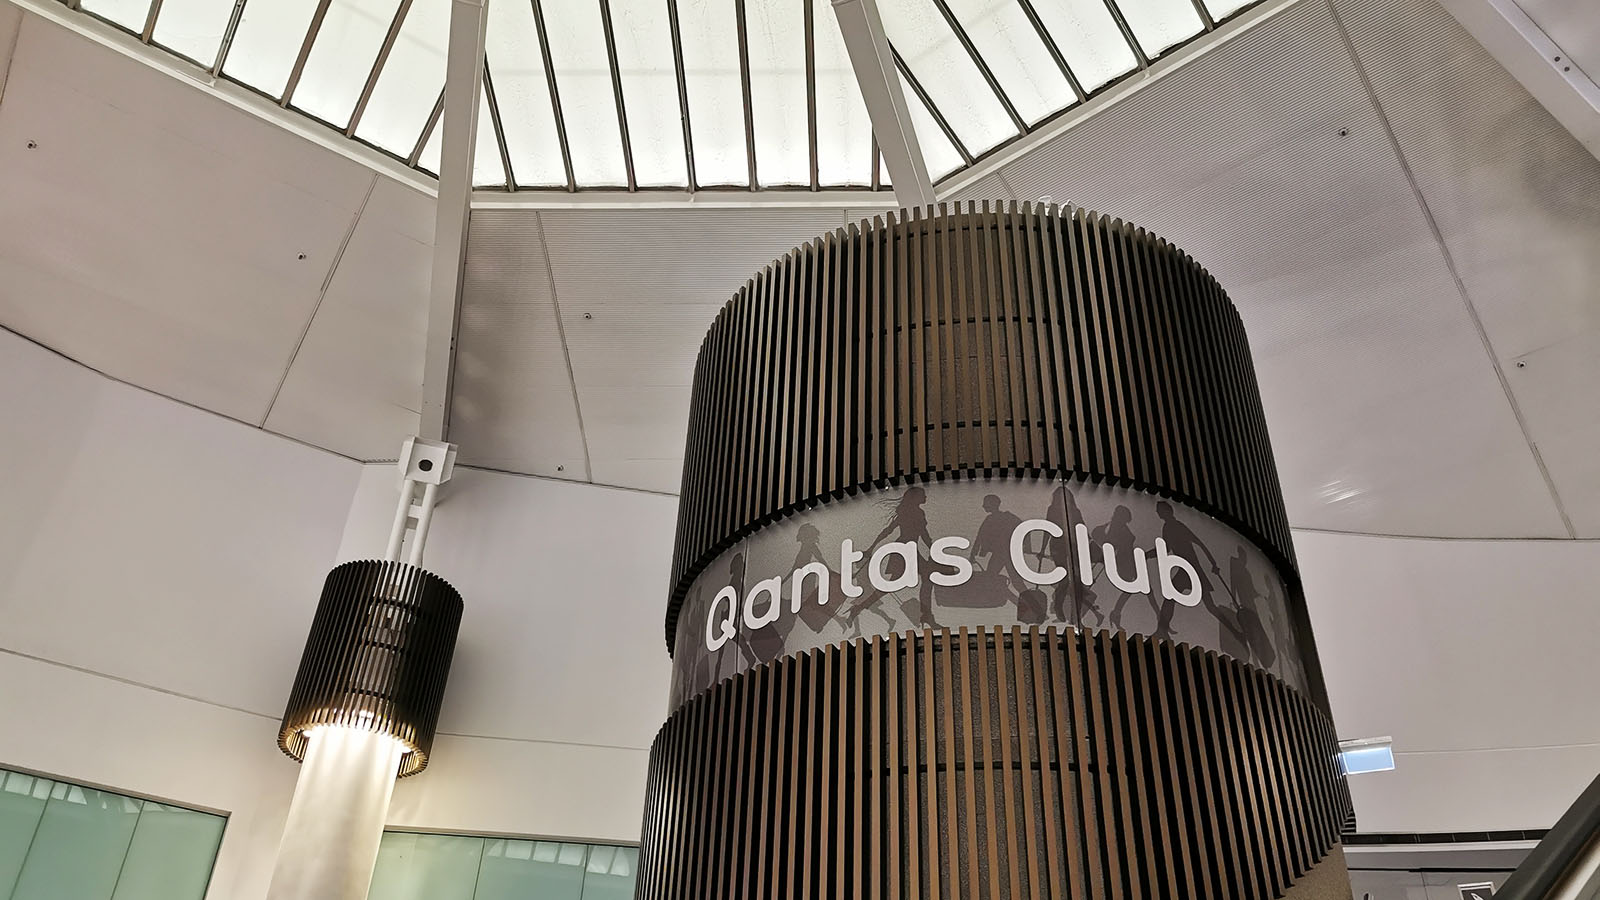 Qantas Club, Perth